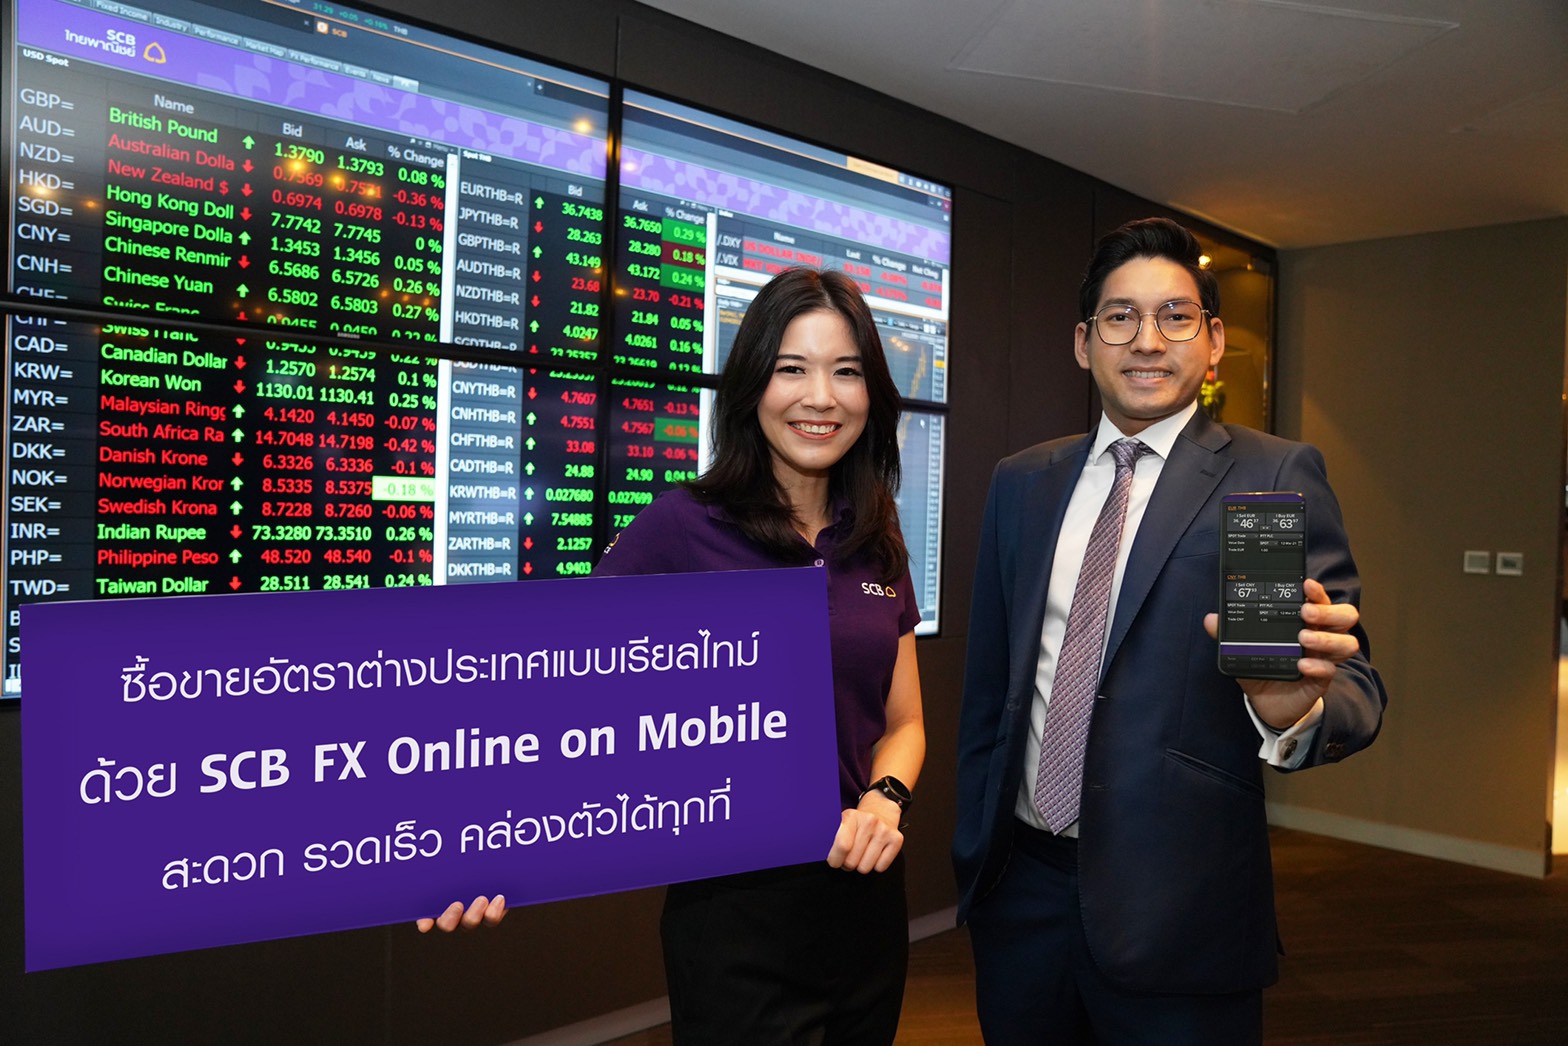 SCB เปิด “FX Online on Mobile” ซื้อขายเงินตราต่างประเทศแบบเรียลไทม์ – การเงิน